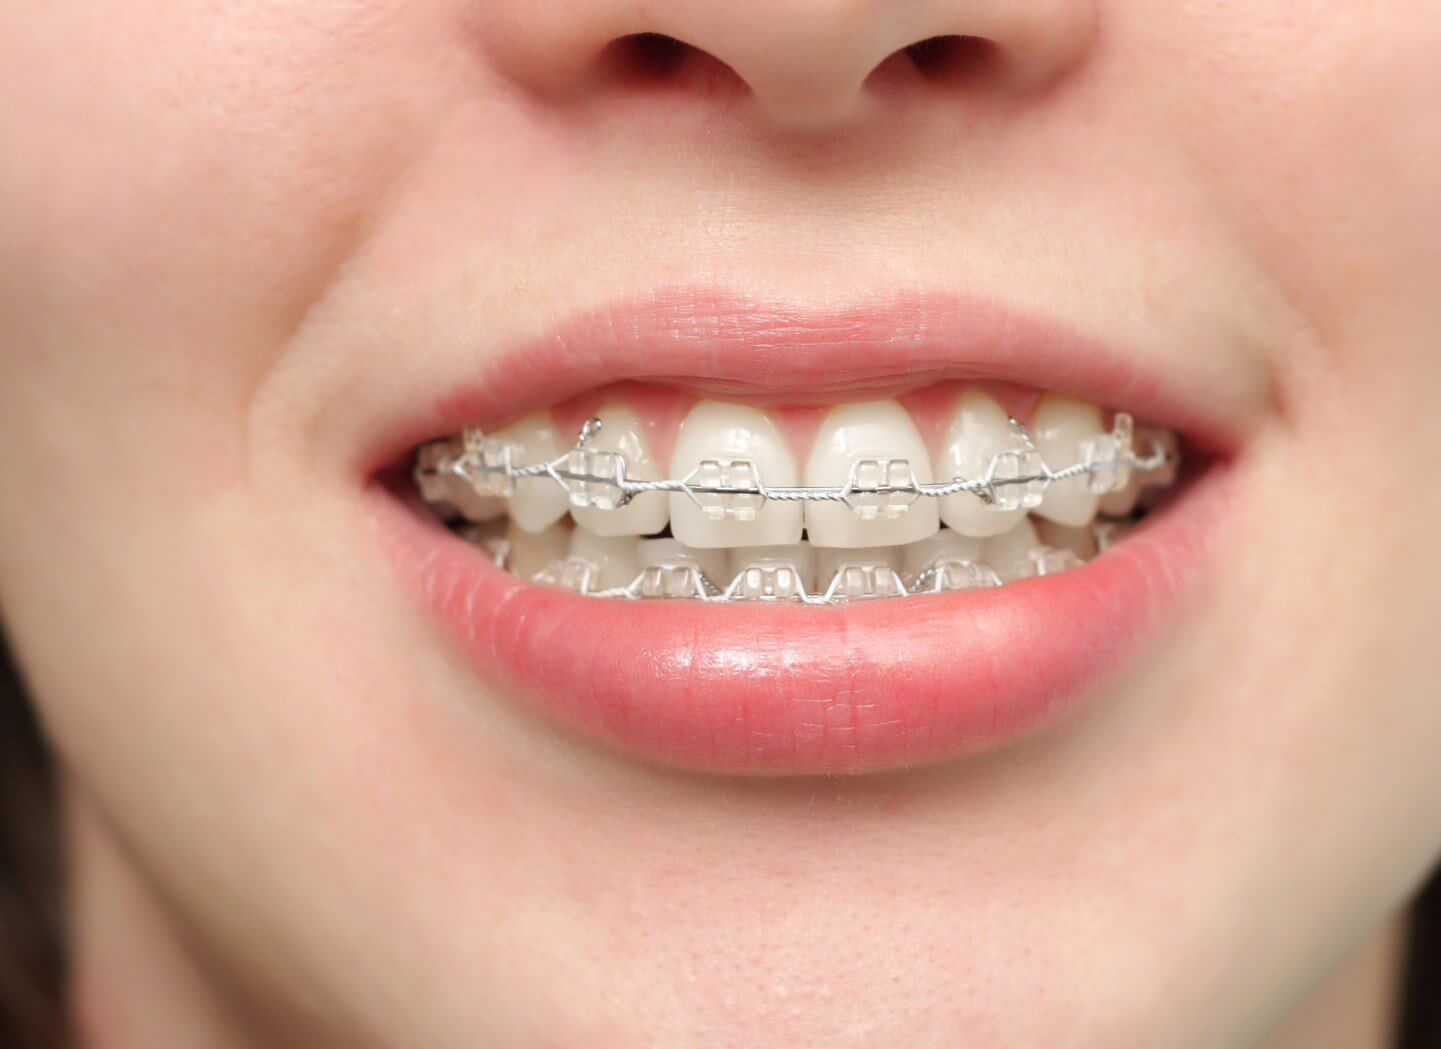 Răng đã lấy tủy có niềng được không là một câu hỏi mà nhiều bạn quan tâm